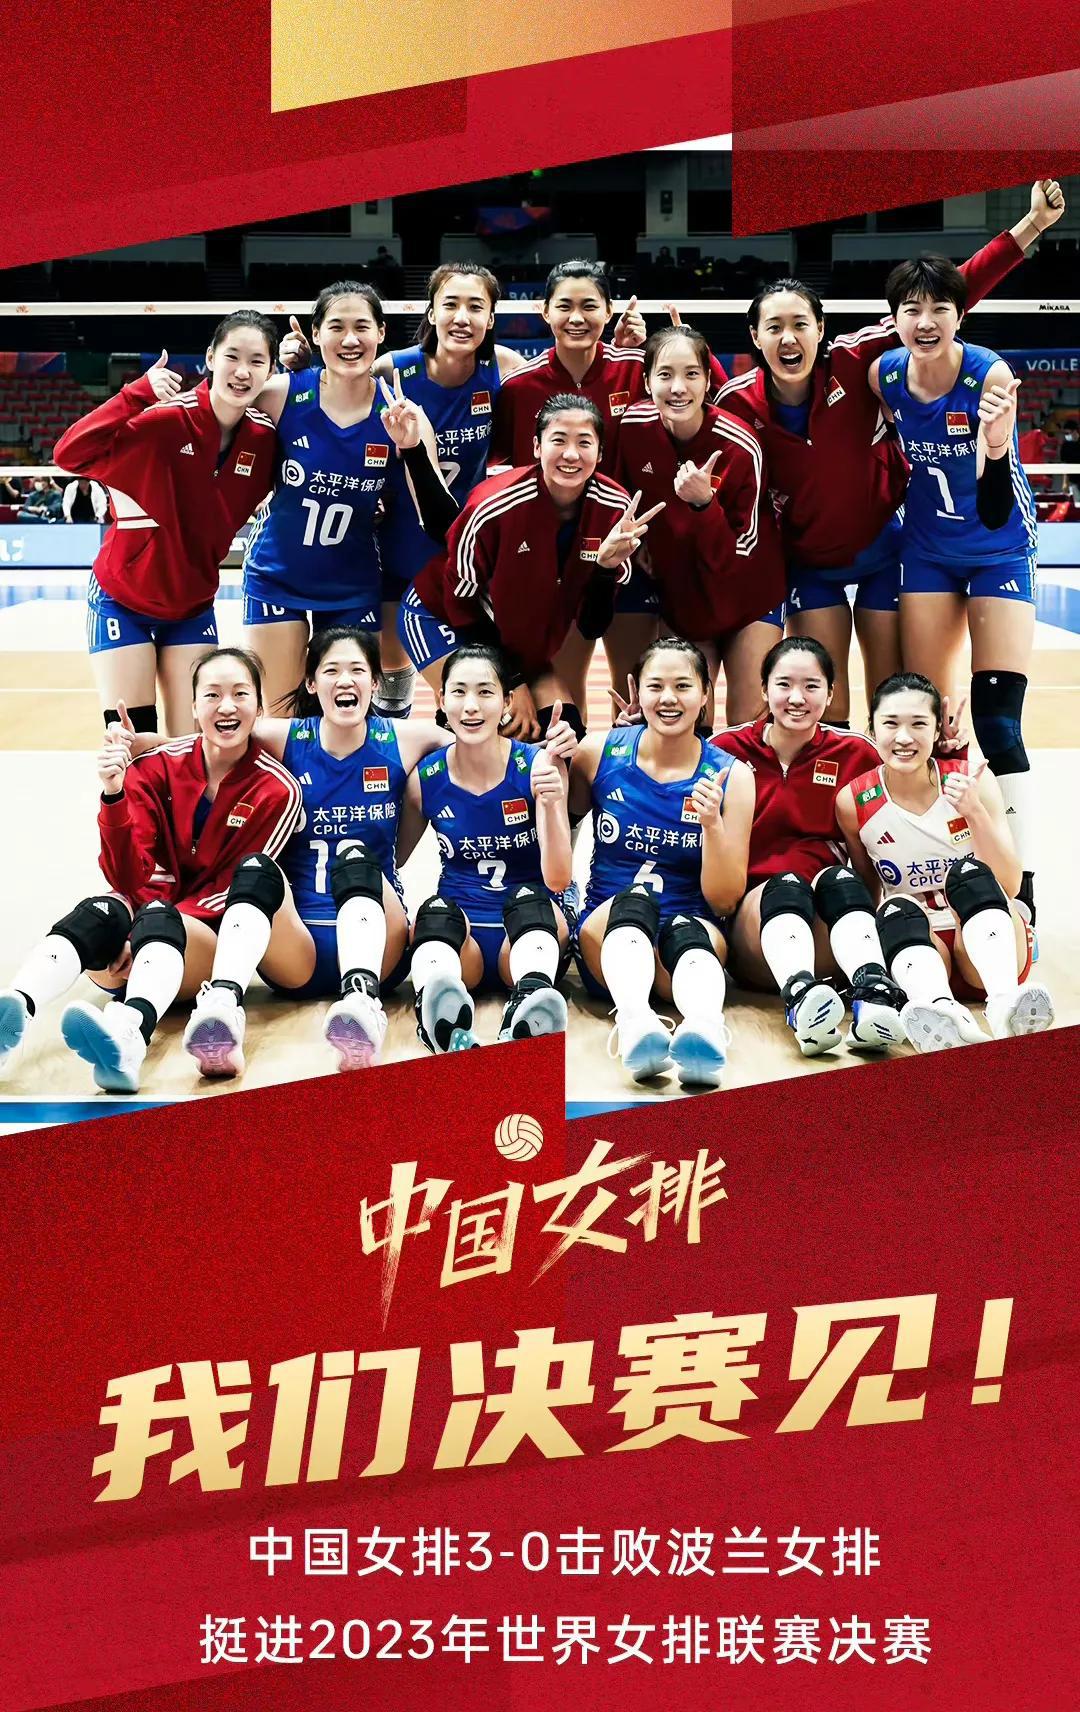 3比0！一个八成球迷没想到的结果~
3比0！一个中国女排团队给出的答案~
3比0(1)